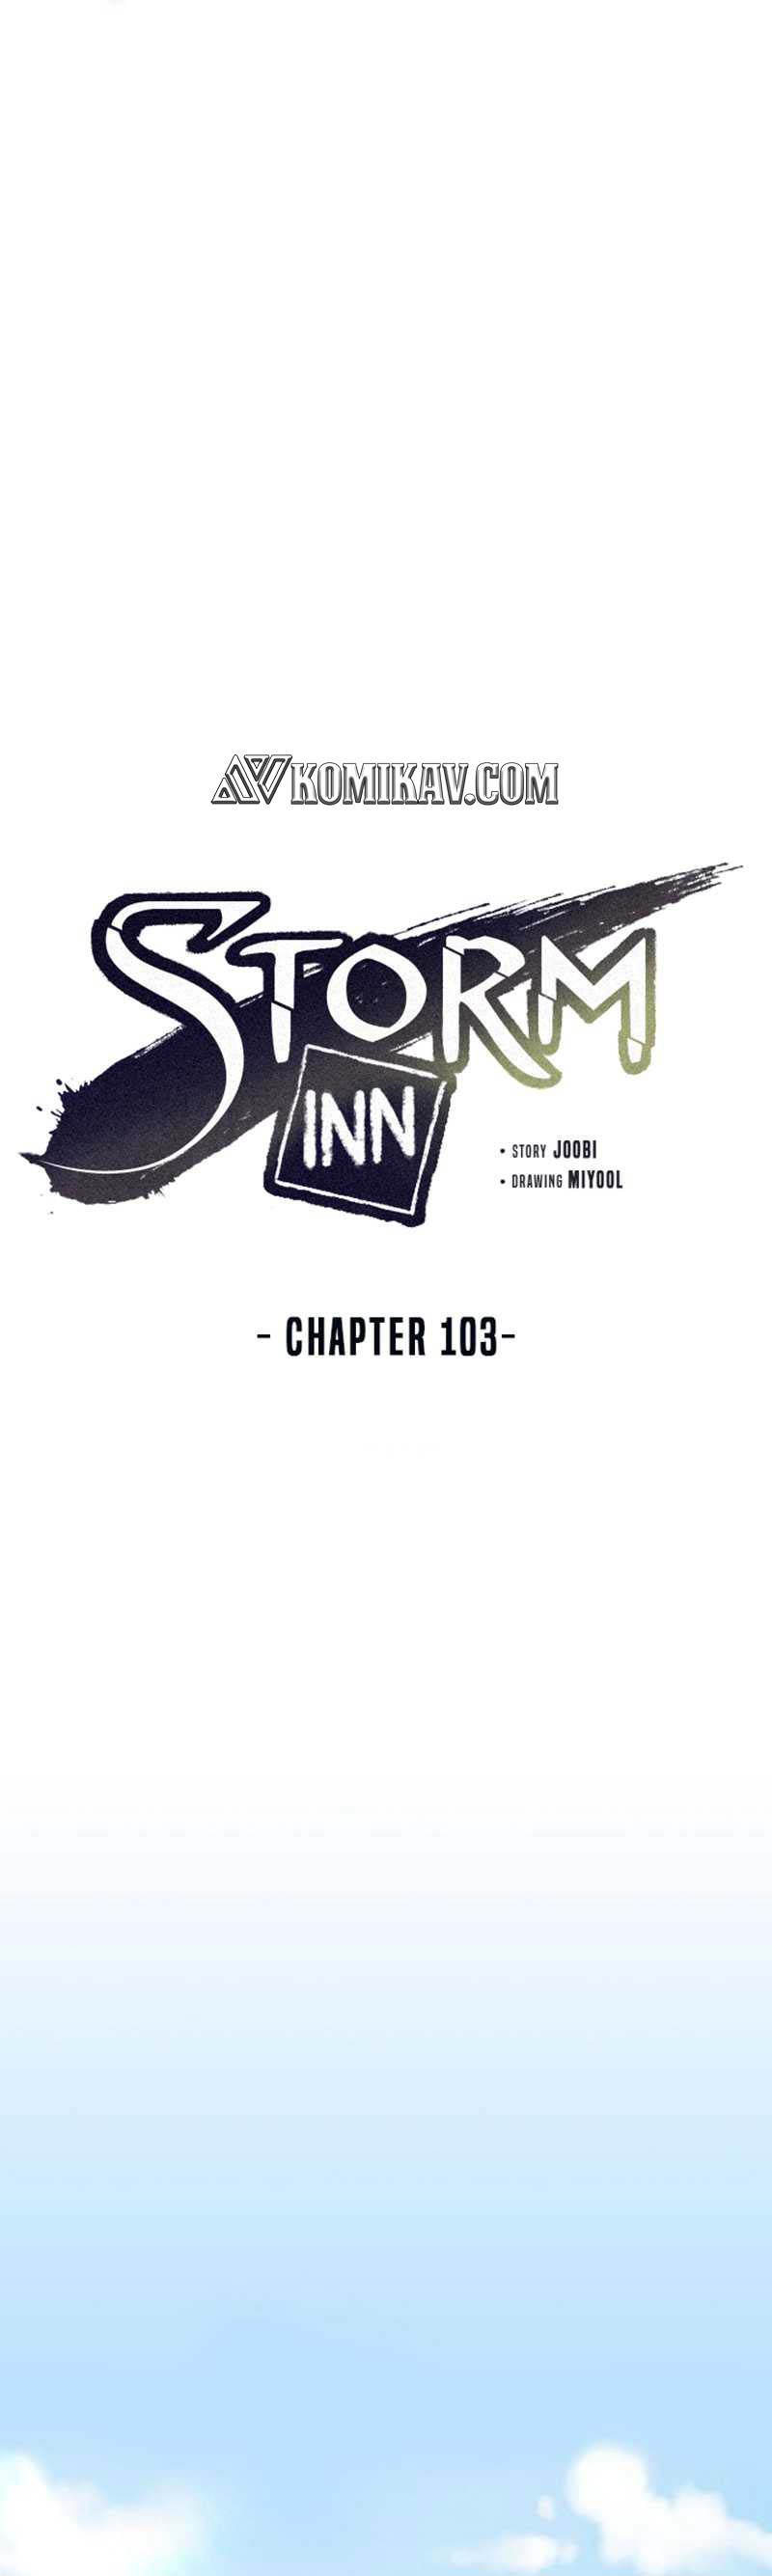 Storm Inn Chapter 103